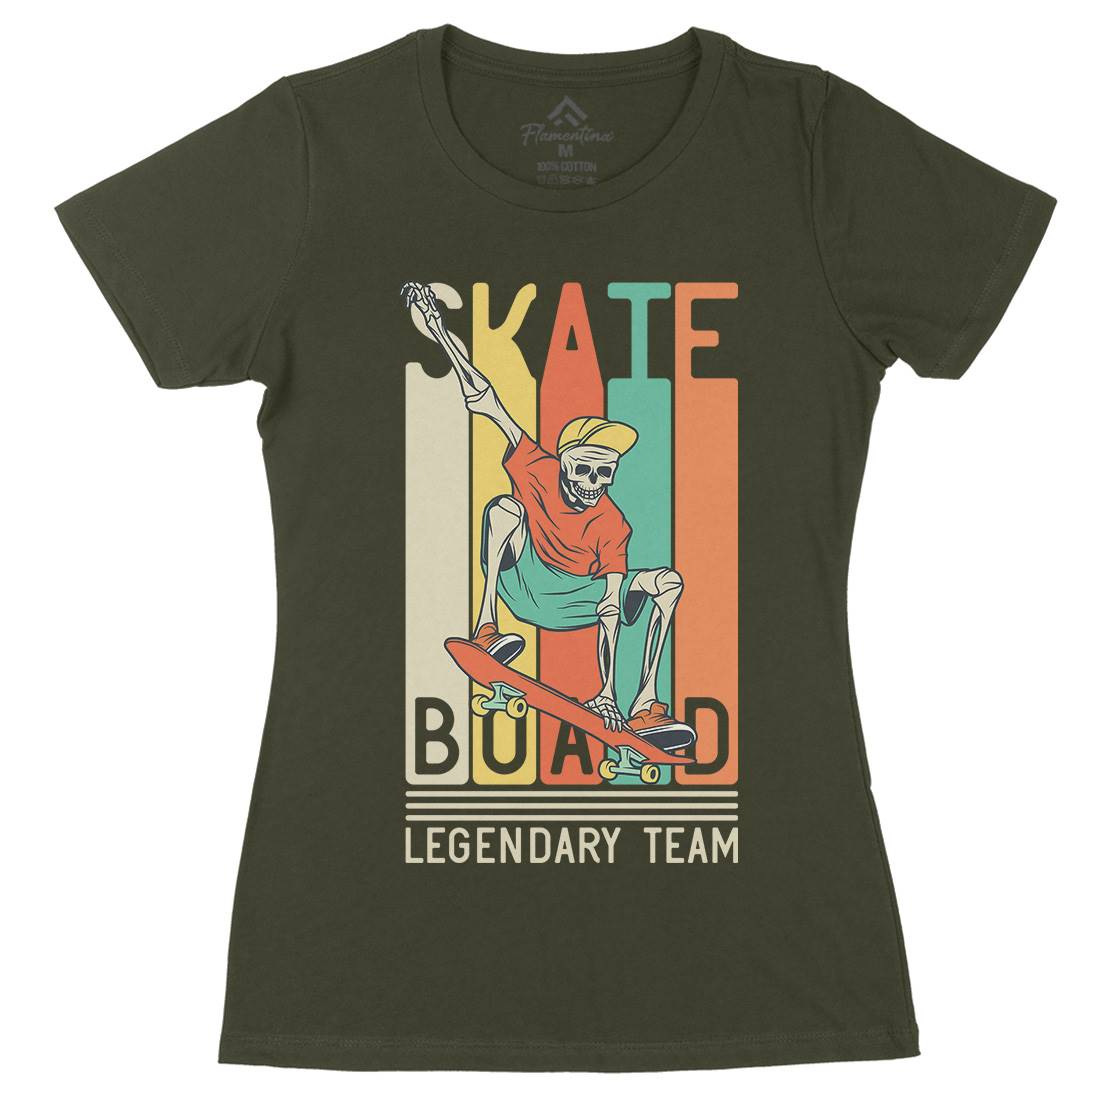 Legendary Team Womens Organic Crew Neck T-Shirt Skate D952